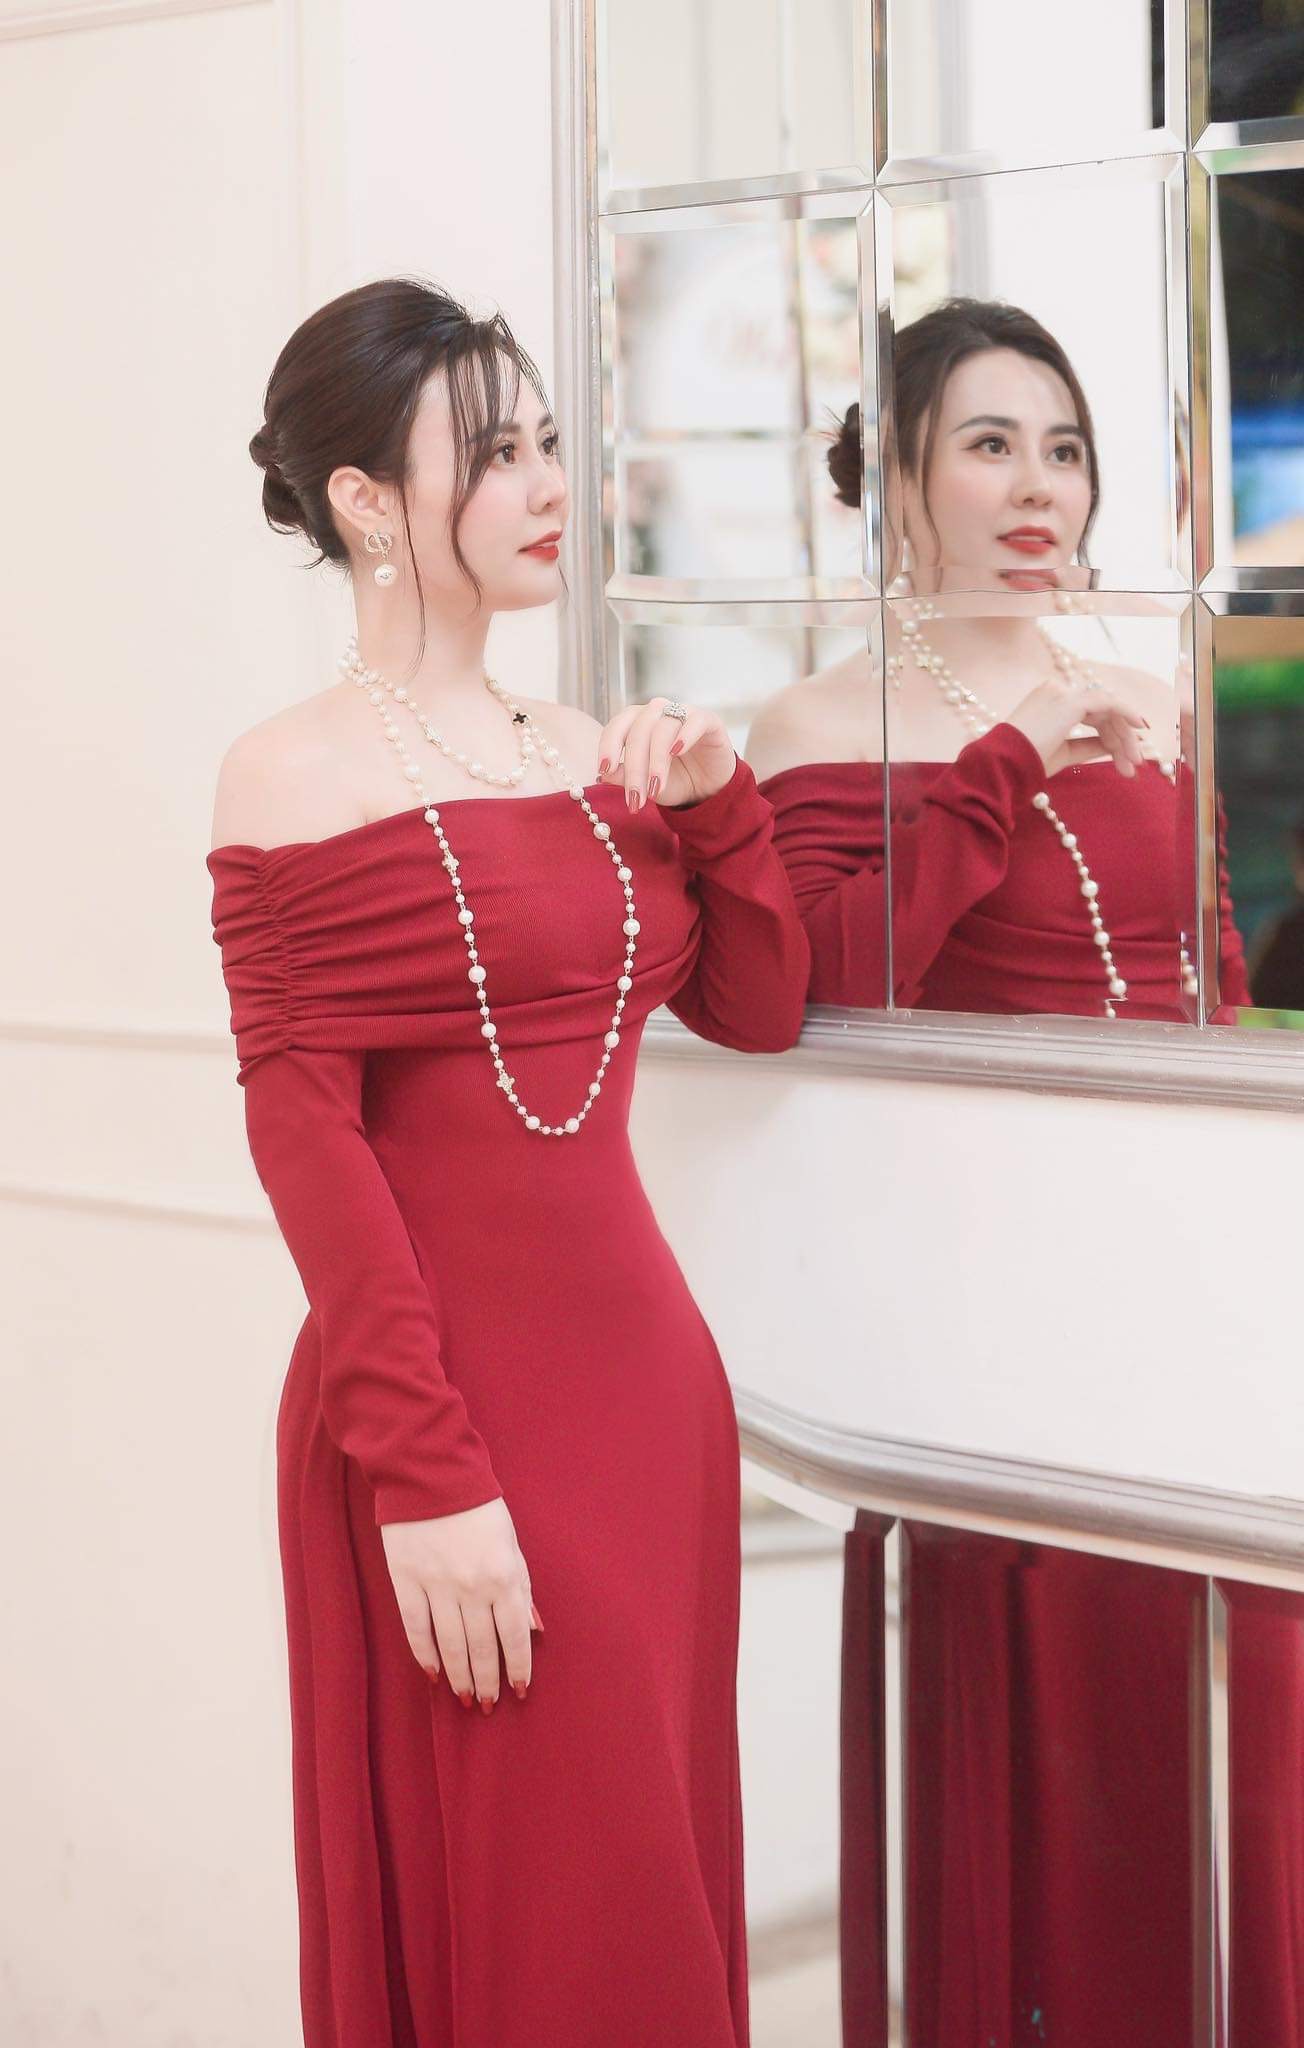 “Hoa hậu 2 nhiệm kỳ” Phan Kim Oanh thả dáng với áo dài đỏ rực - 2